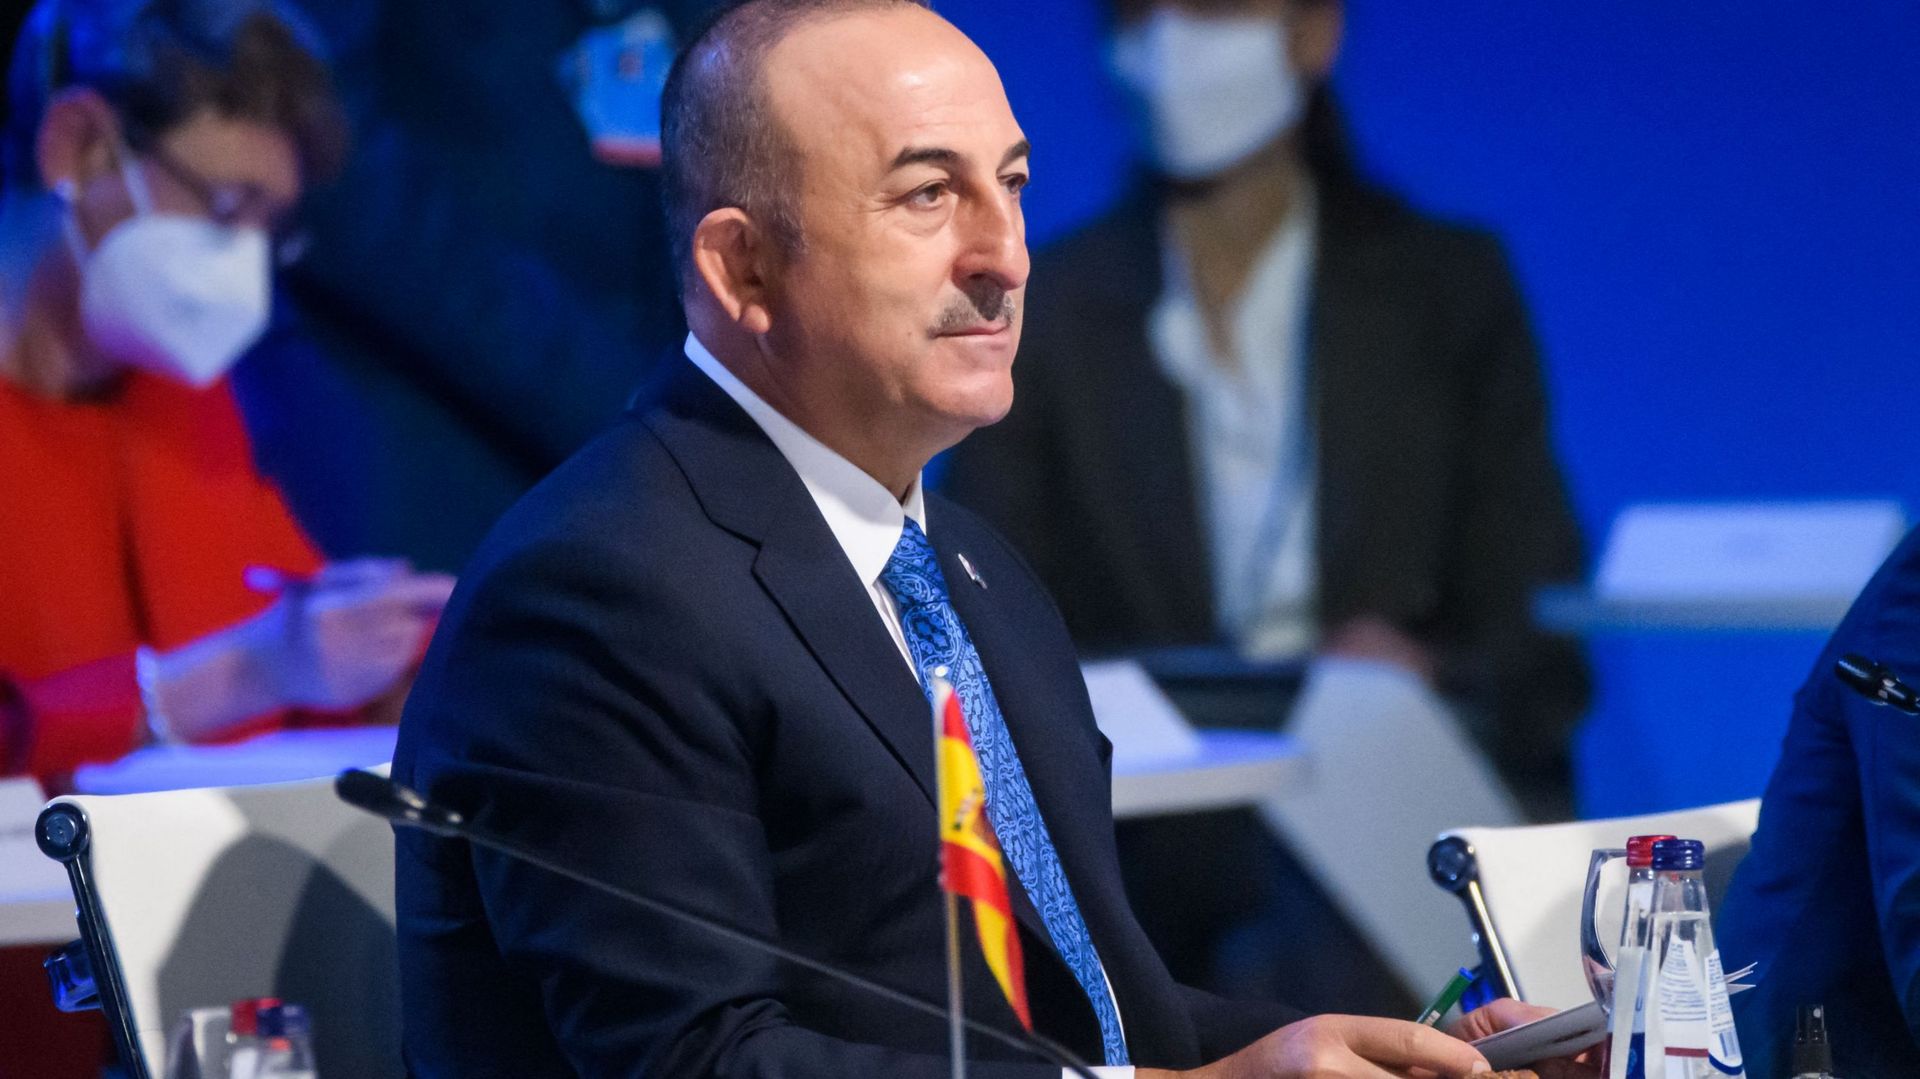 Mevlut Cavusoglu, ministre des Affaires étrangères de la Turquie, participe à la première session de la réunion des ministres des Affaires étrangères de l'OTAN à Riga, en Lettonie, le 30 novembre 2021